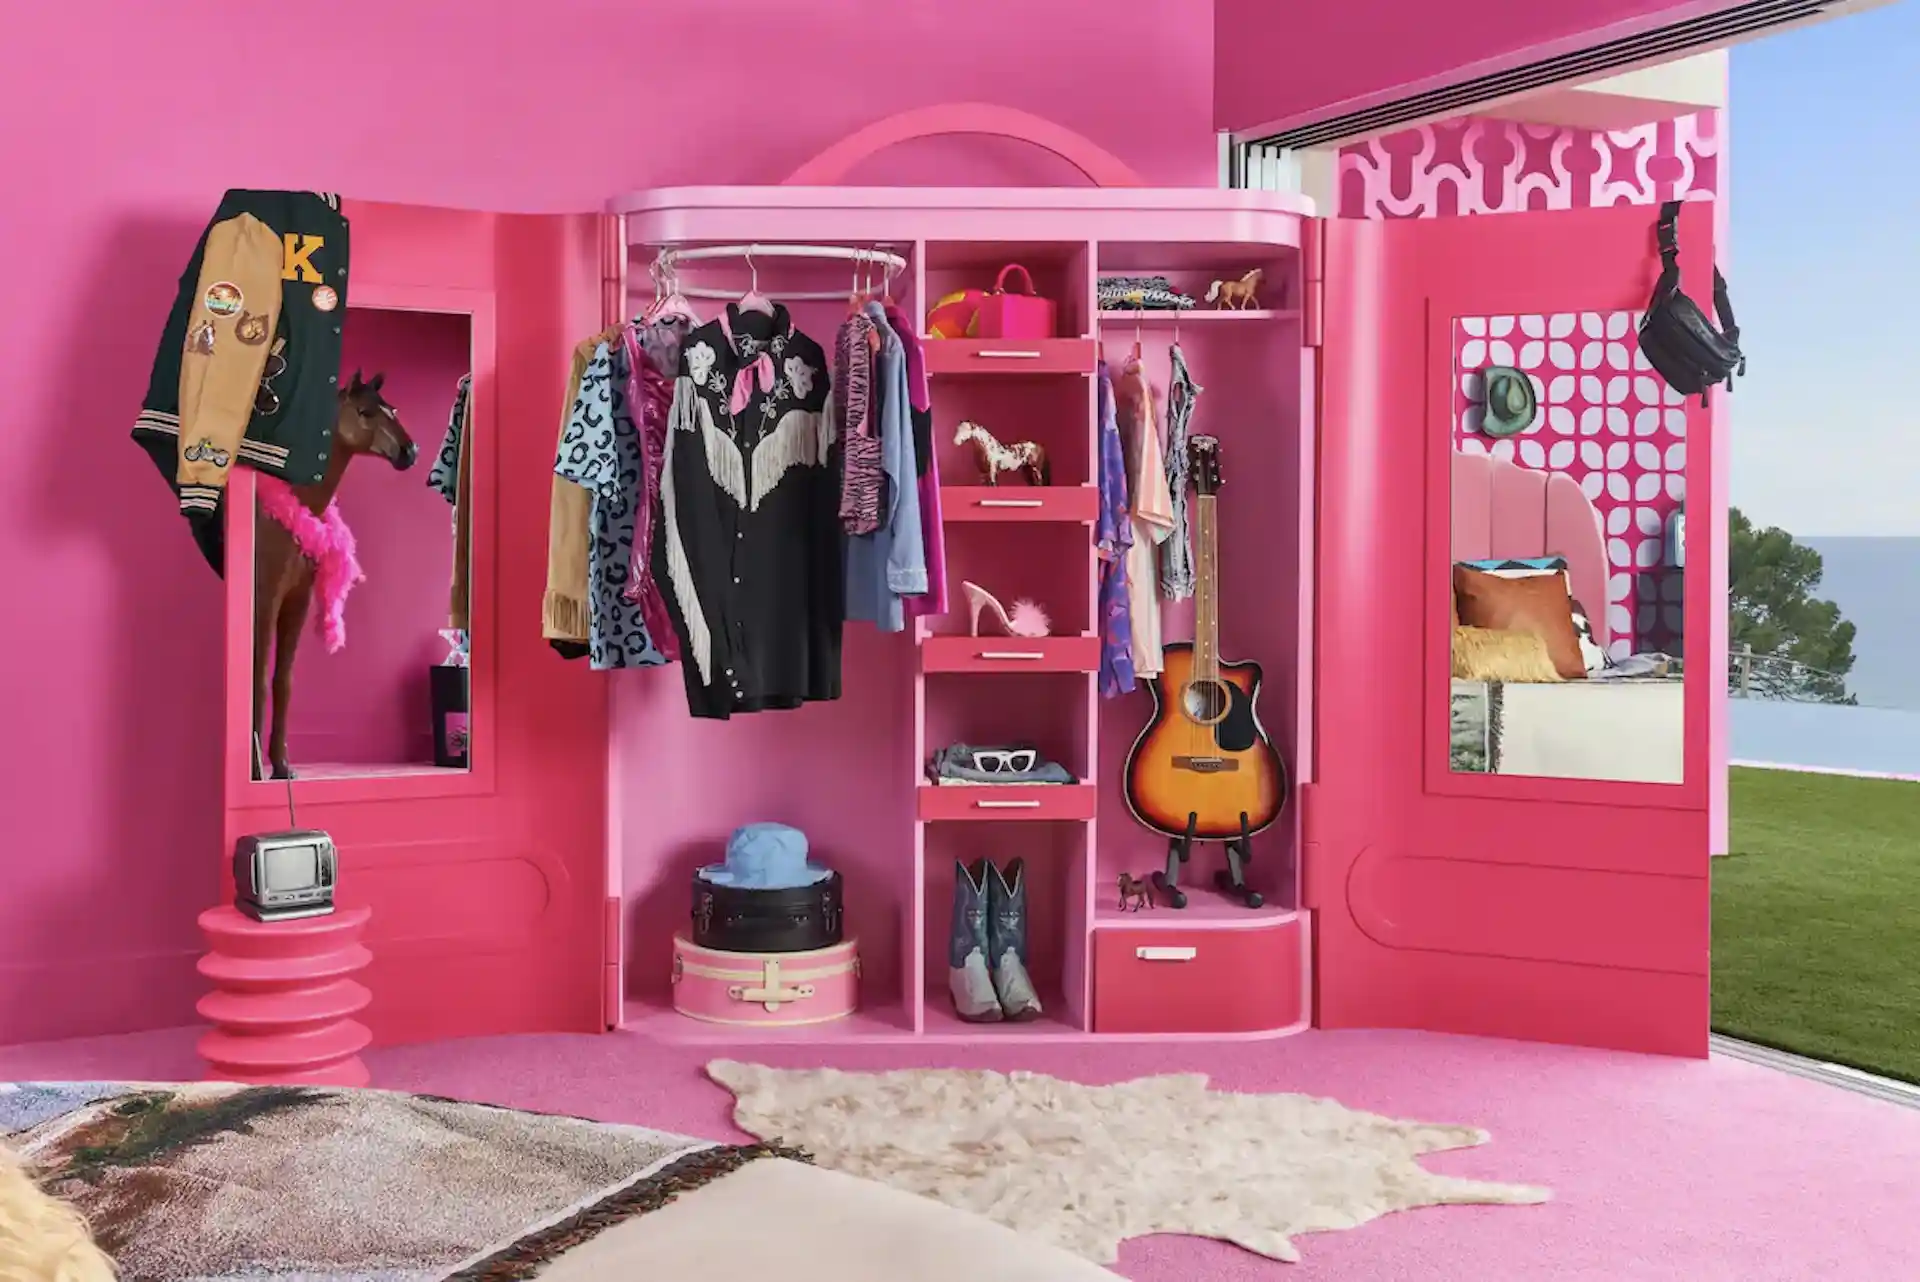 Cómo reservar la casa de Barbie en Malibú con Airbnb: imágenes